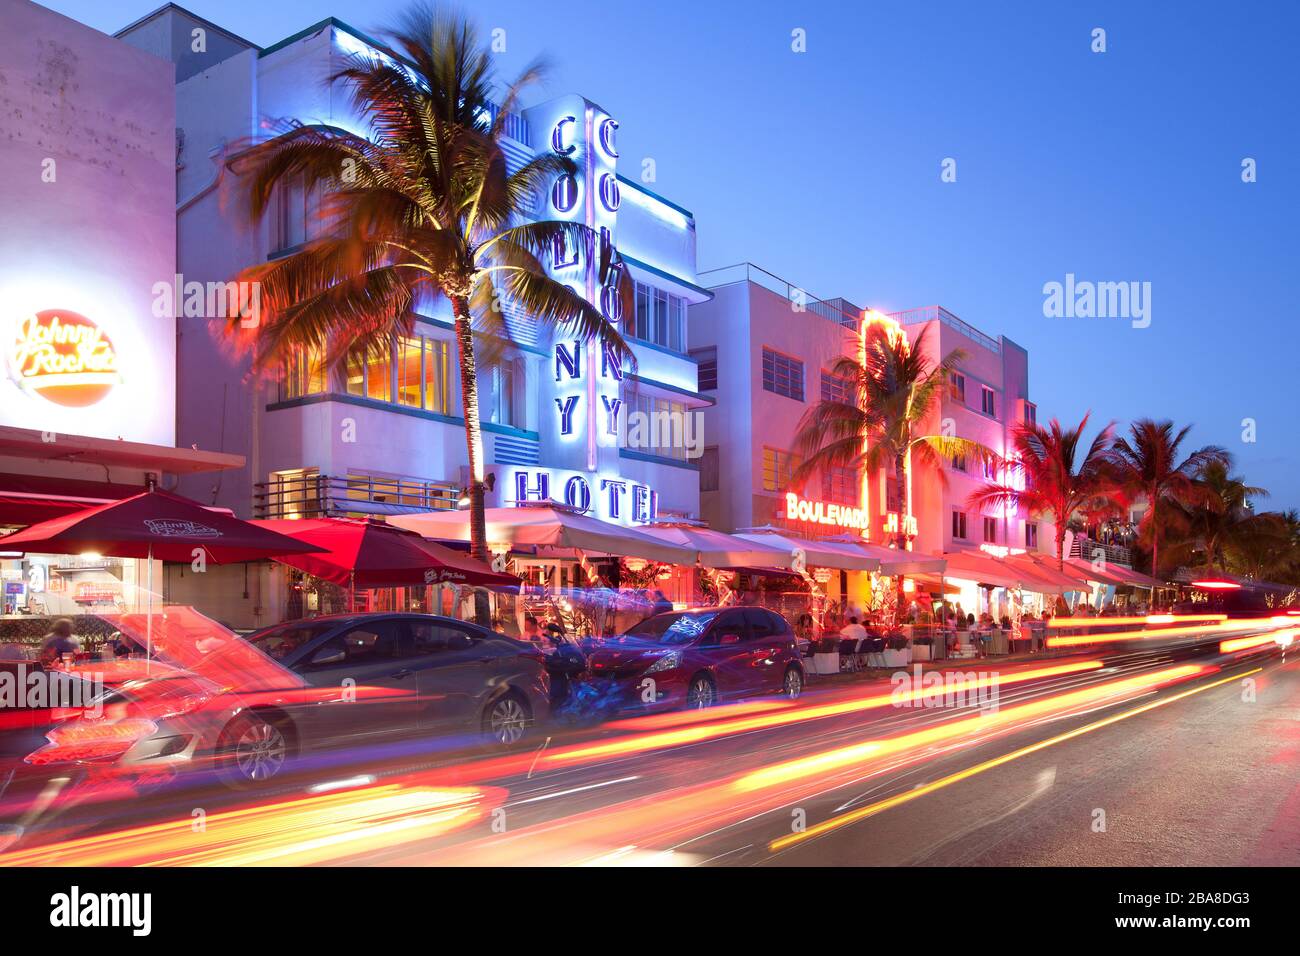 South Beach, Miami, Florida, Estados Unidos - Hoteles, bares y restaurantes en Ocean Drive en el famoso distrito Art Deco. Foto de stock